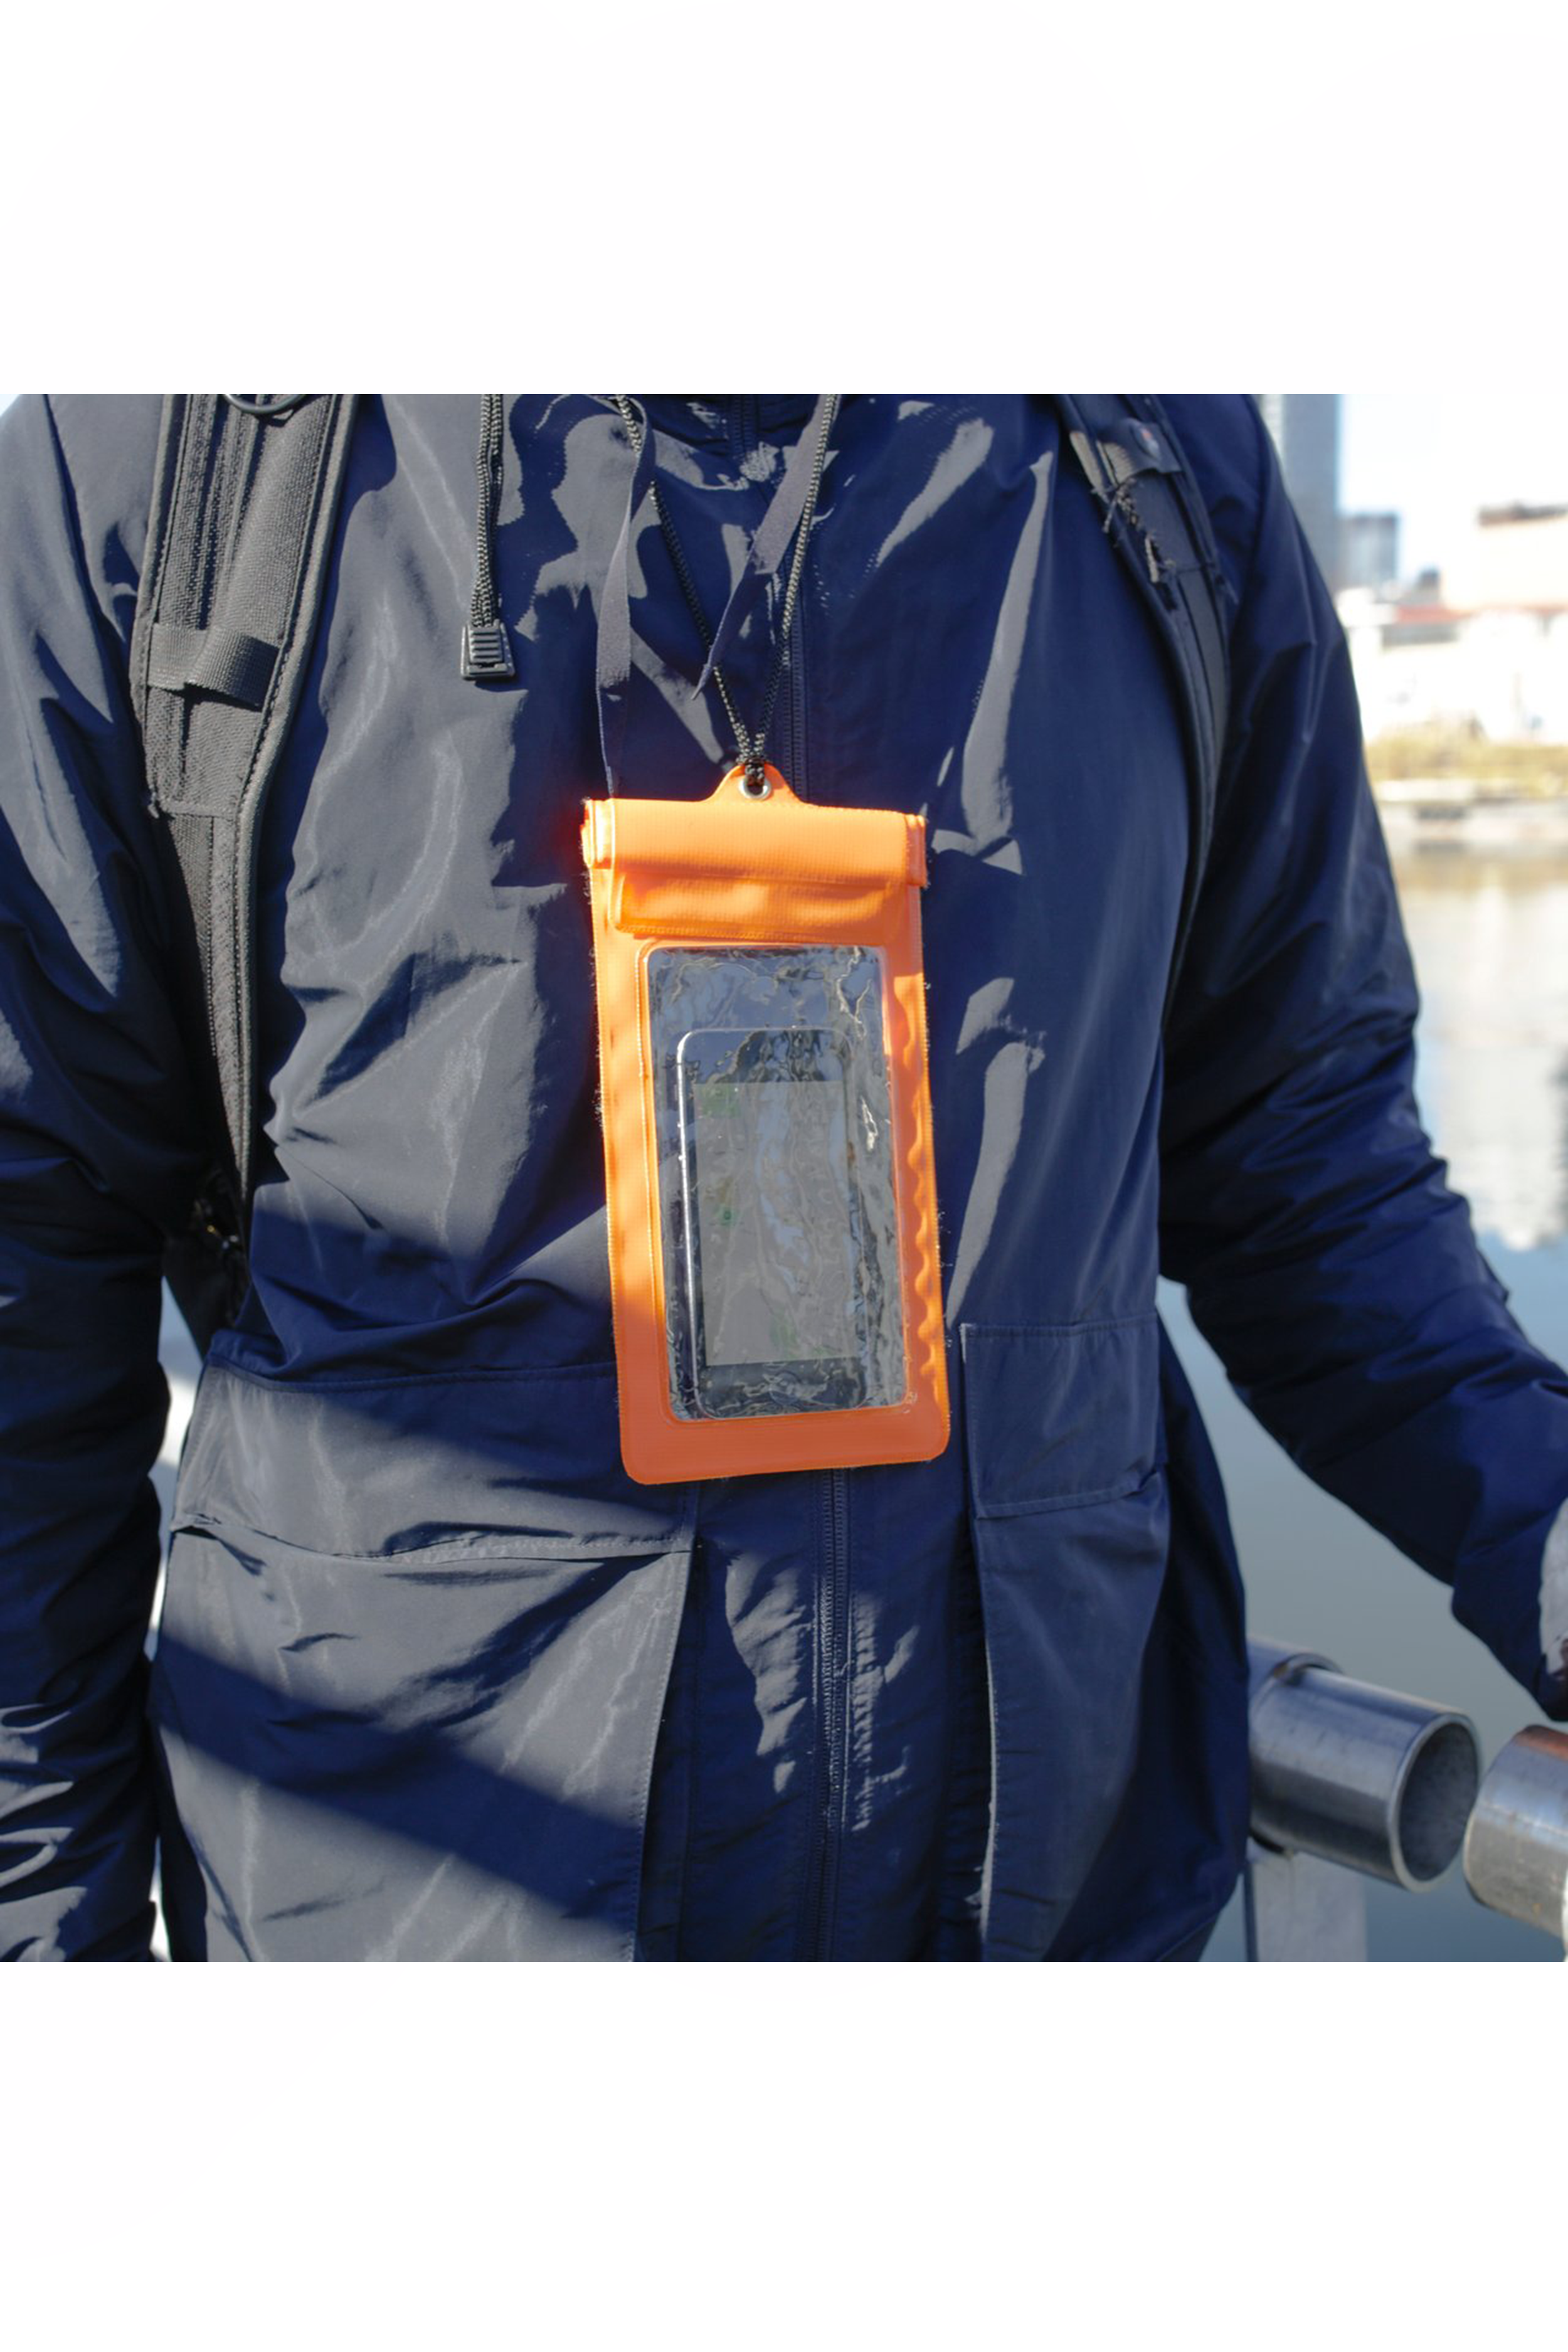 Waterproof Phone Sleeve in Orange - Philistine